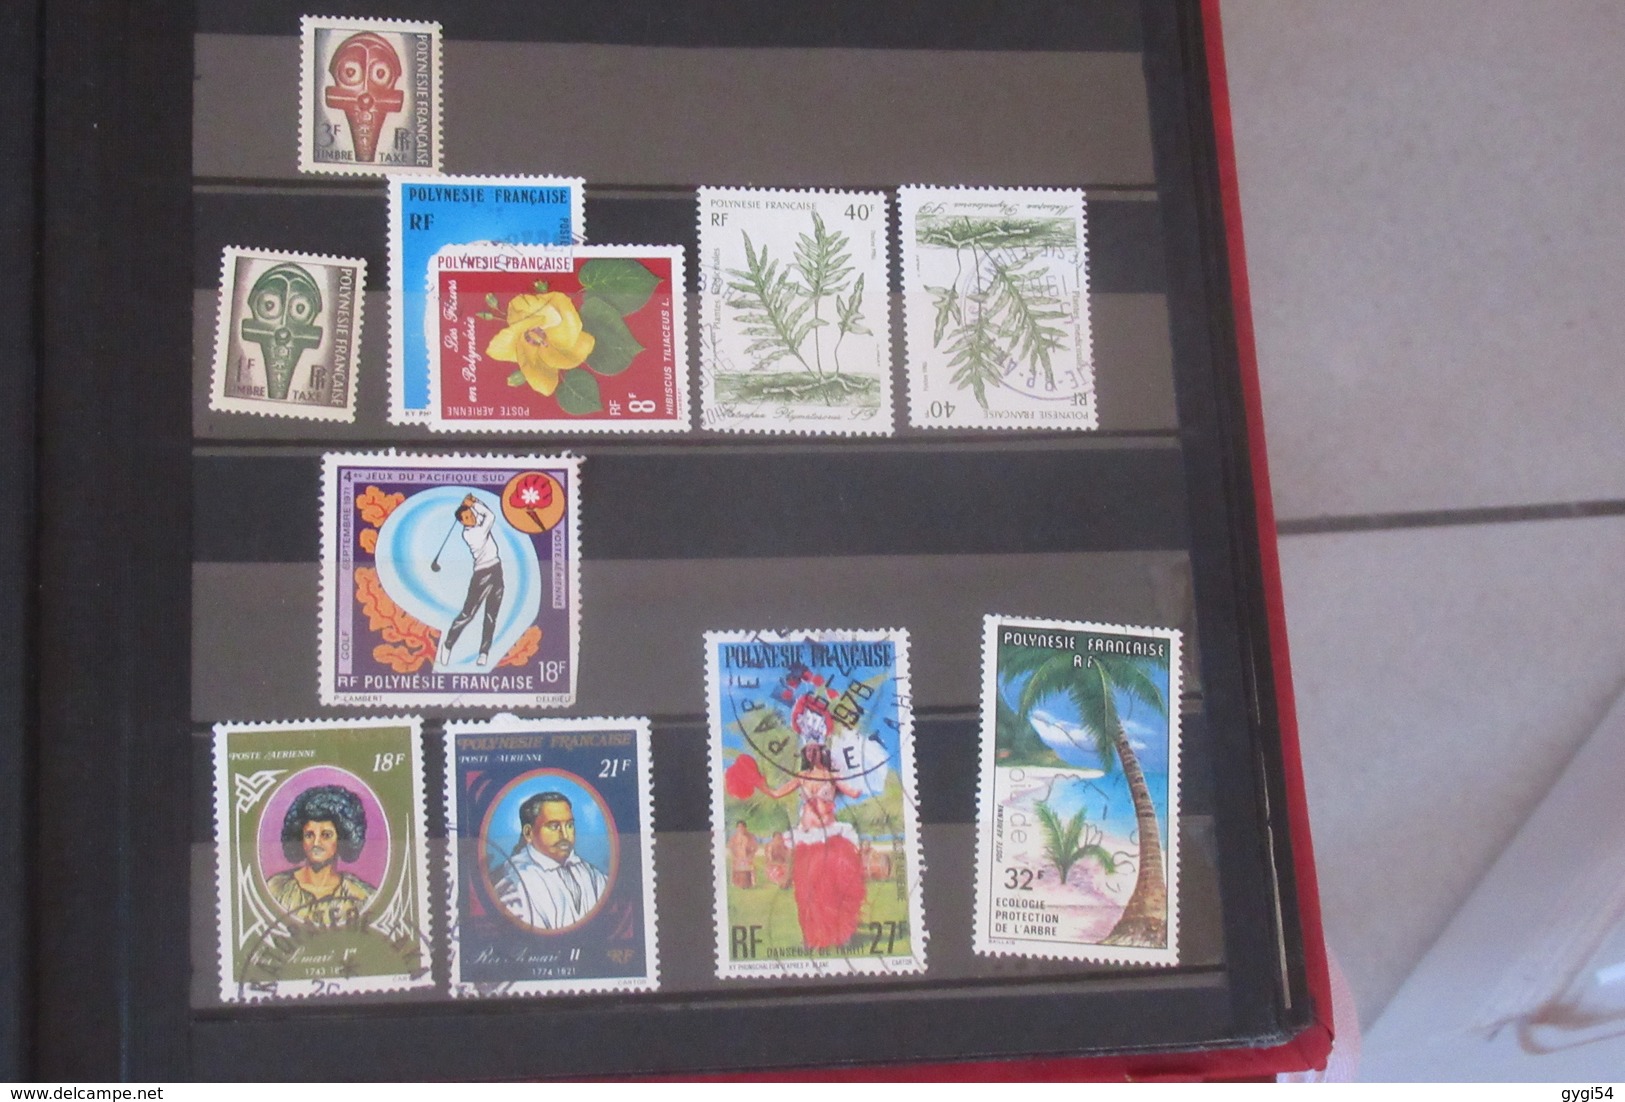 France 1900-1977 , Polynésie Française , Congo Belge 47 scans